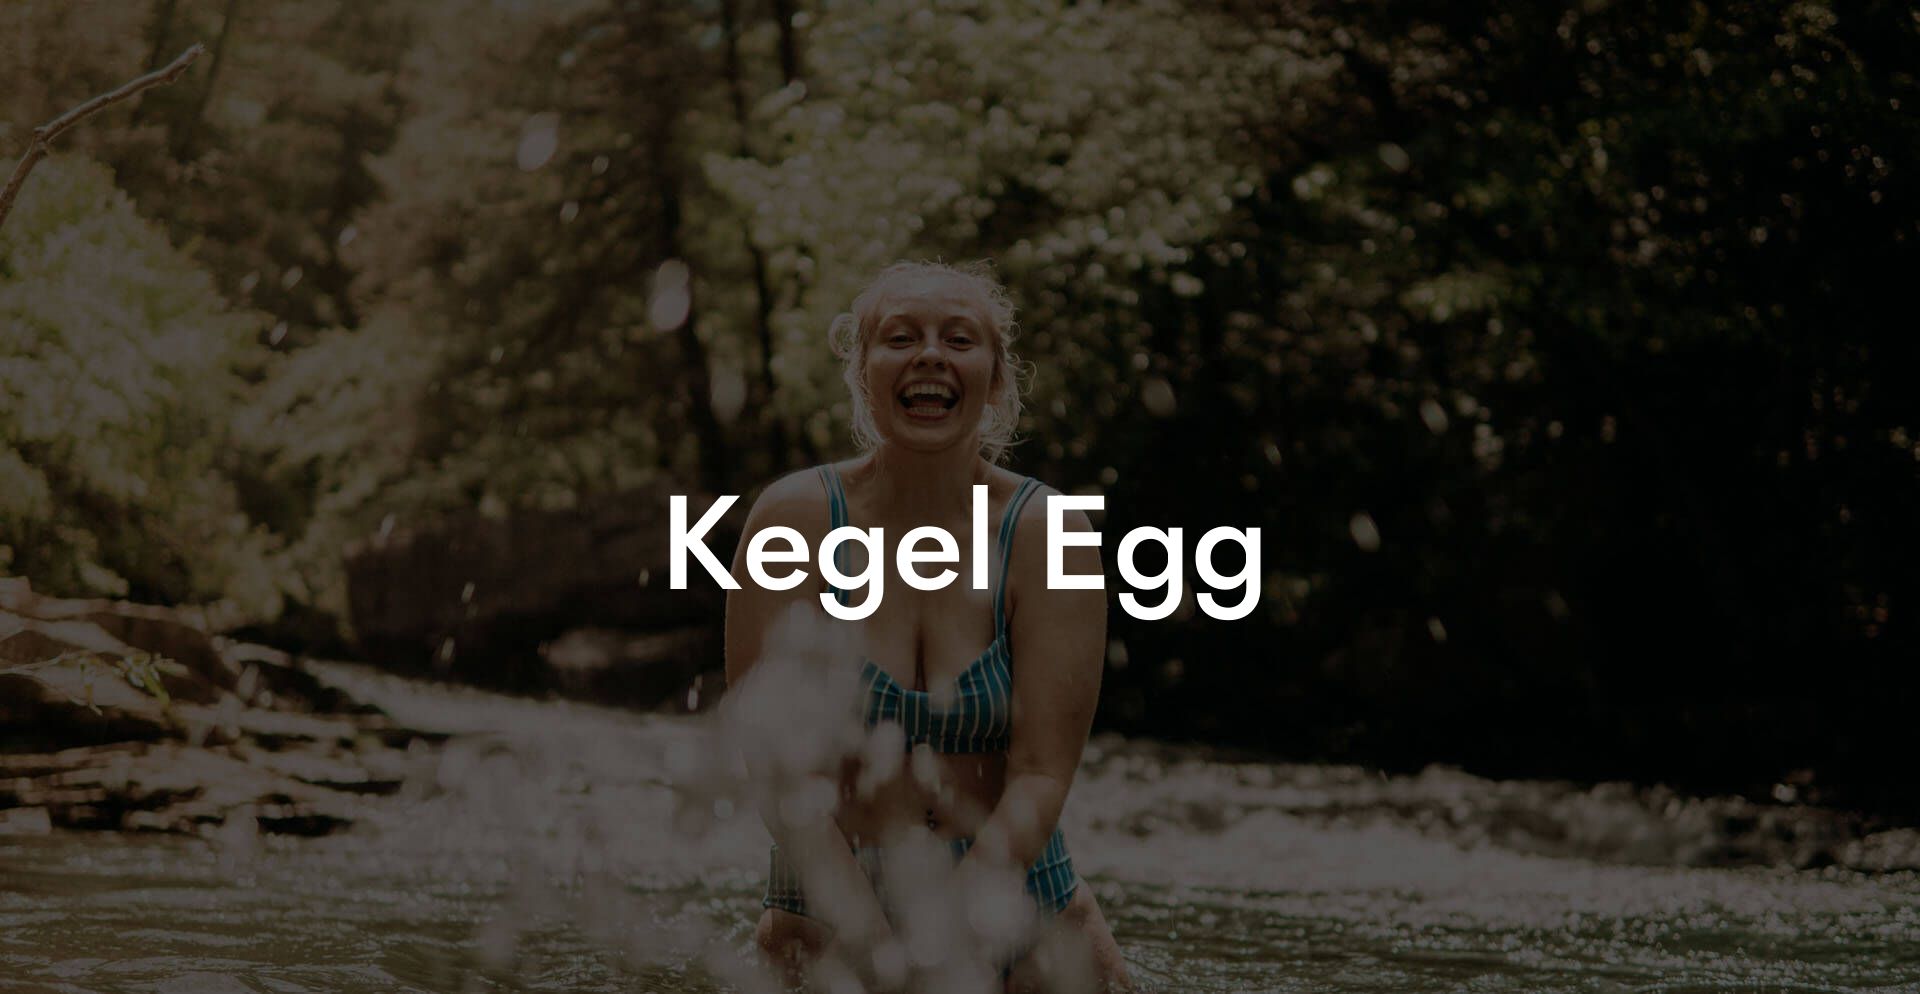 Kegel Egg